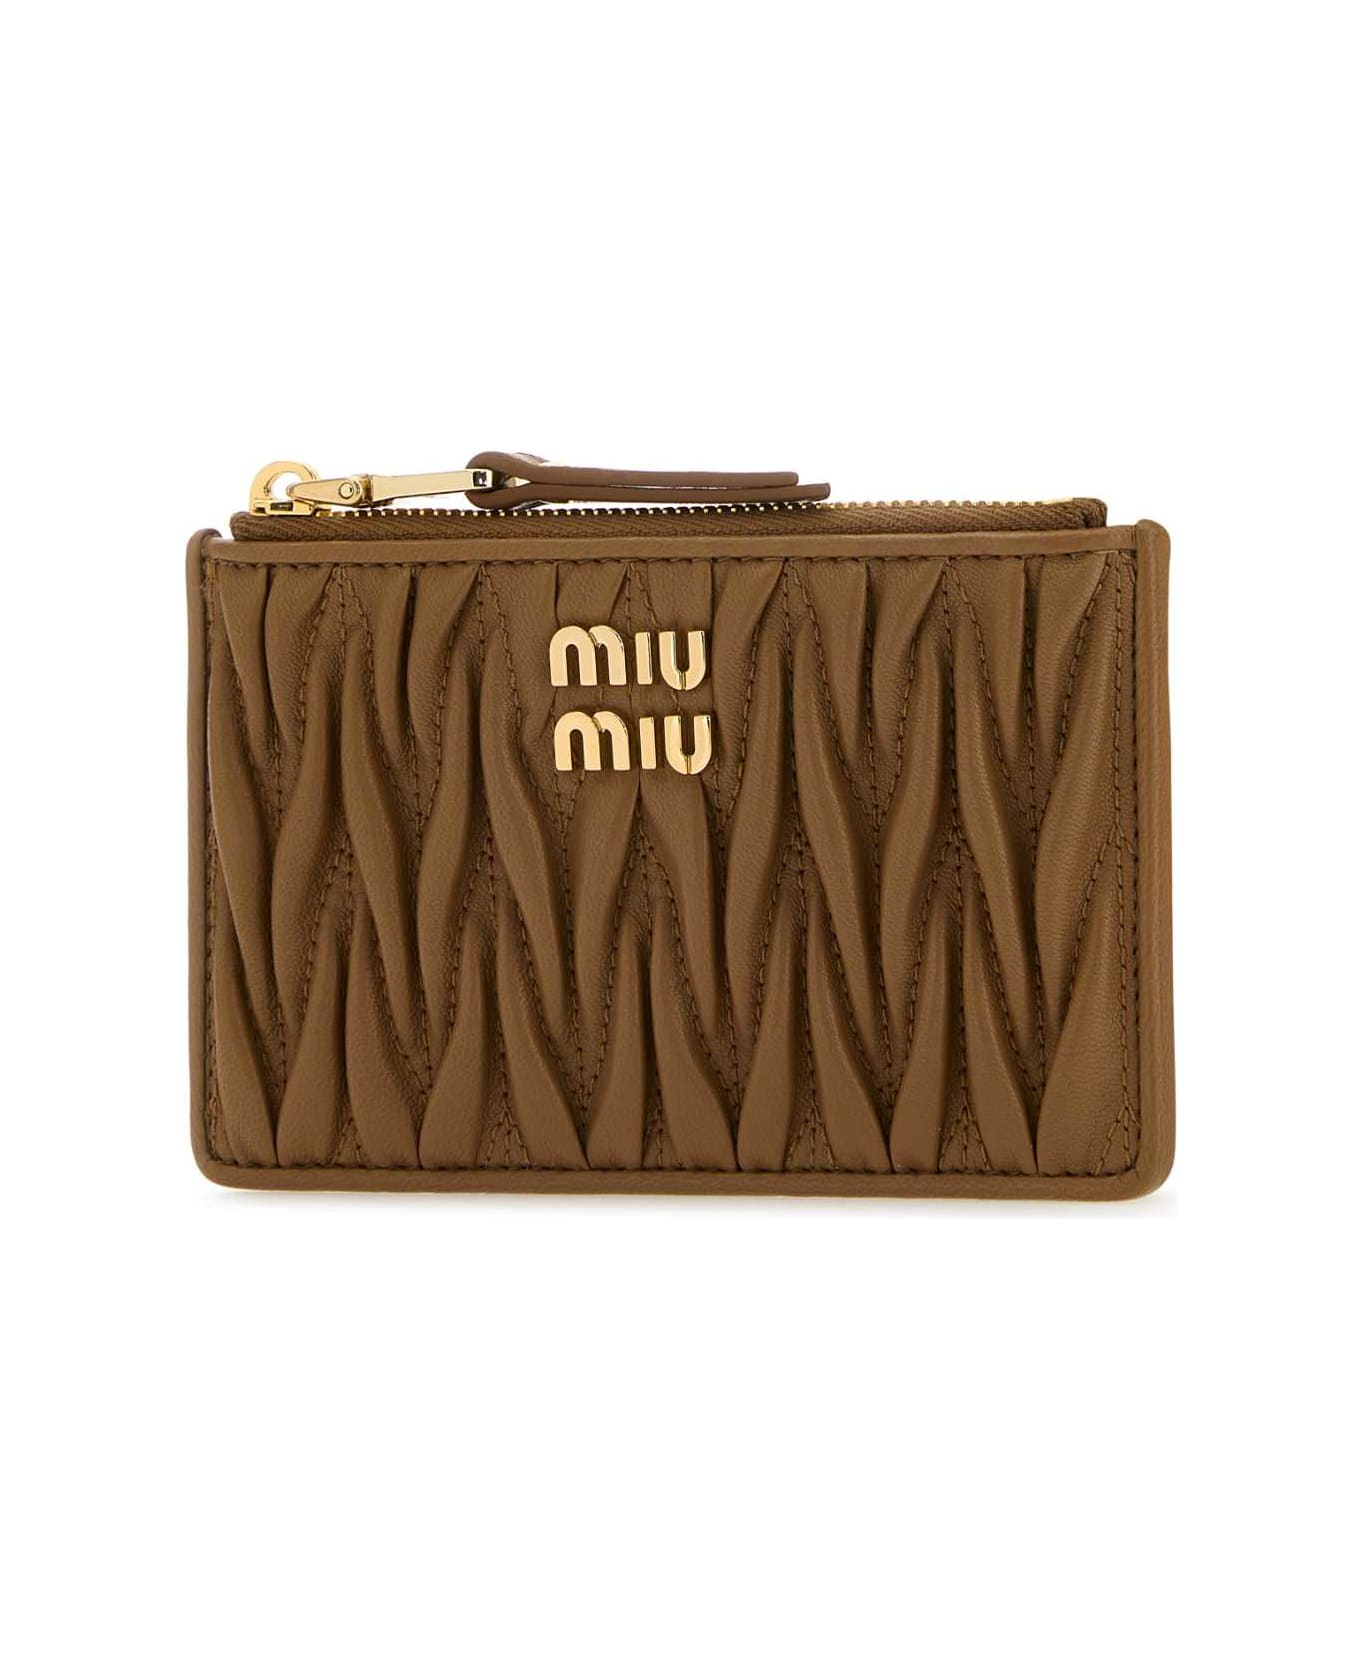 Miu Miu Biscuit Leather Card Holder - CARAMEL